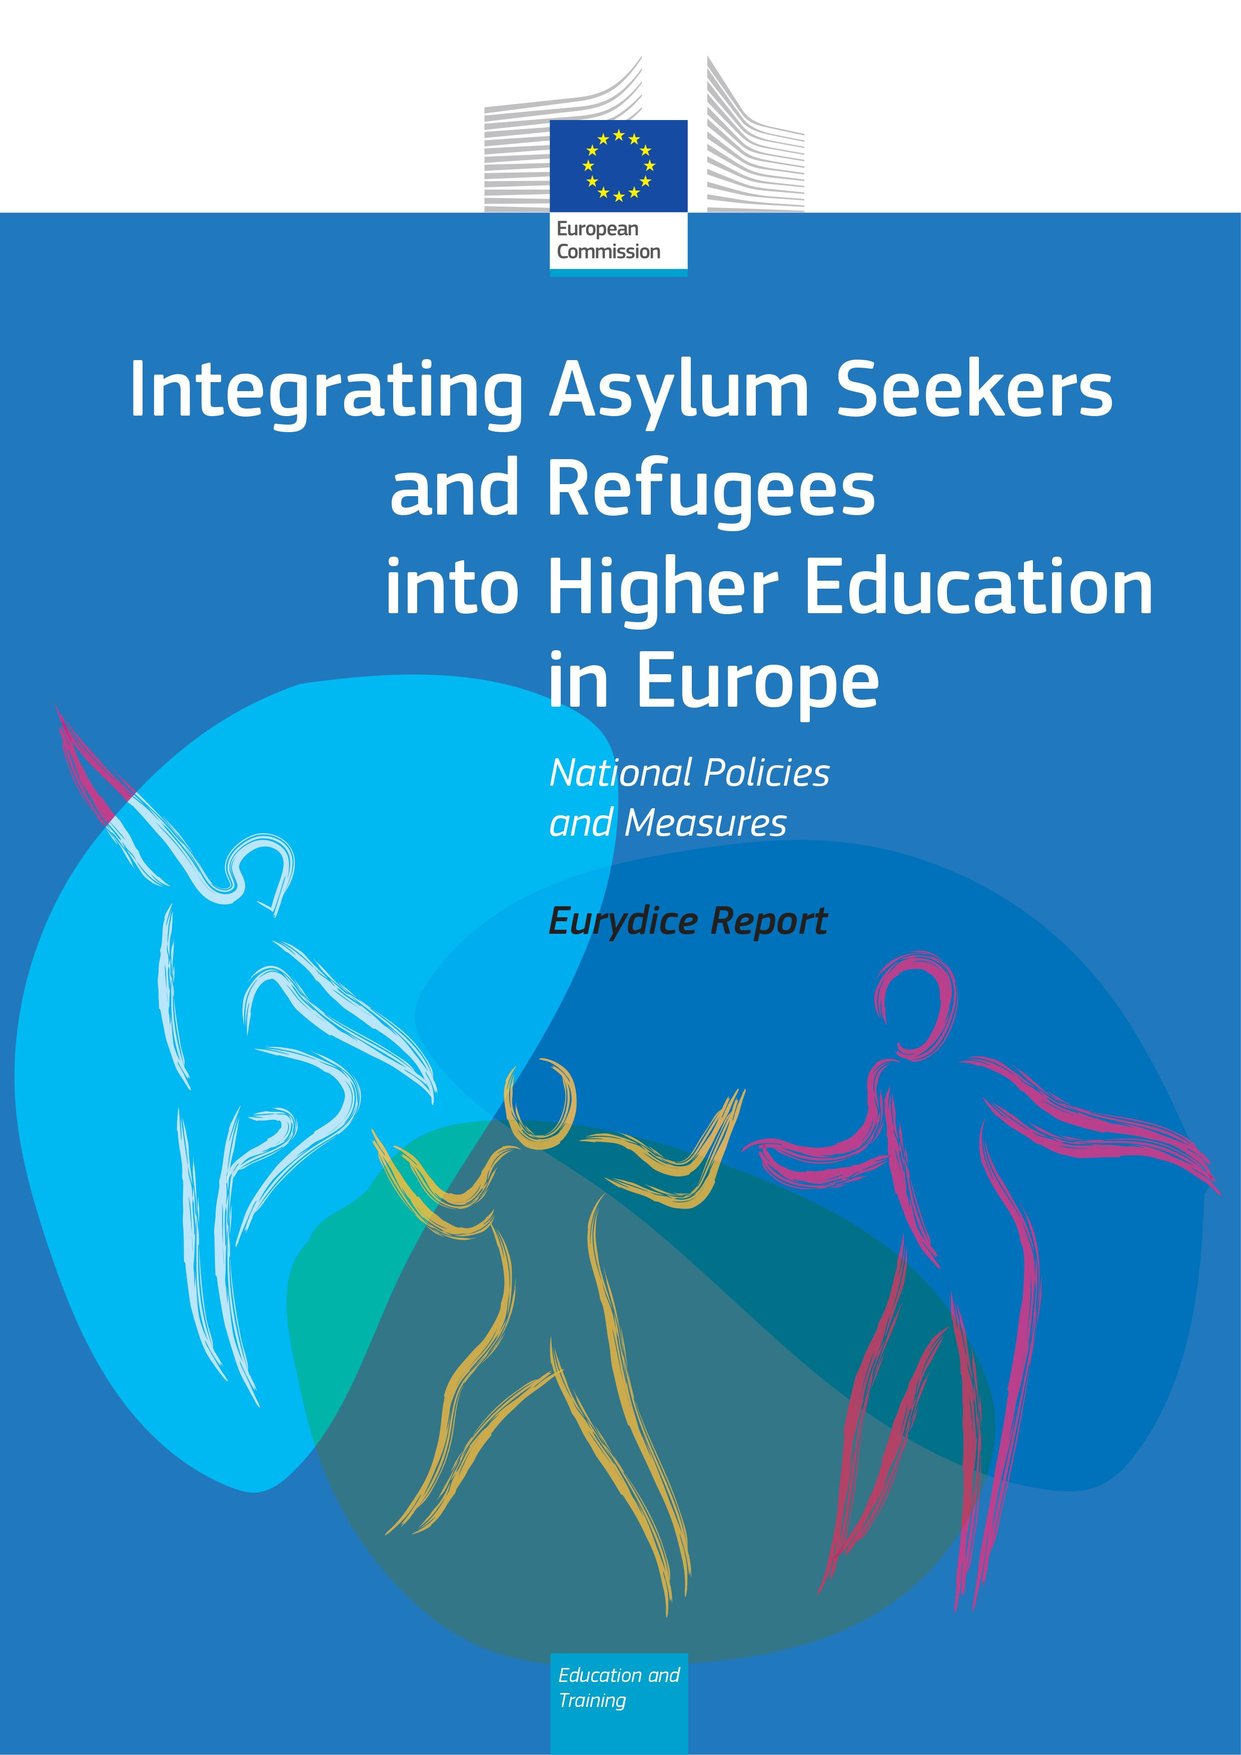 Rani i predškolski odgoj i obrazovanje, digitalno obrazovanje, integracija učenika migrantskog porijekla u obrazovanje – komparativne studije mreže Eurydice  - Slika 6